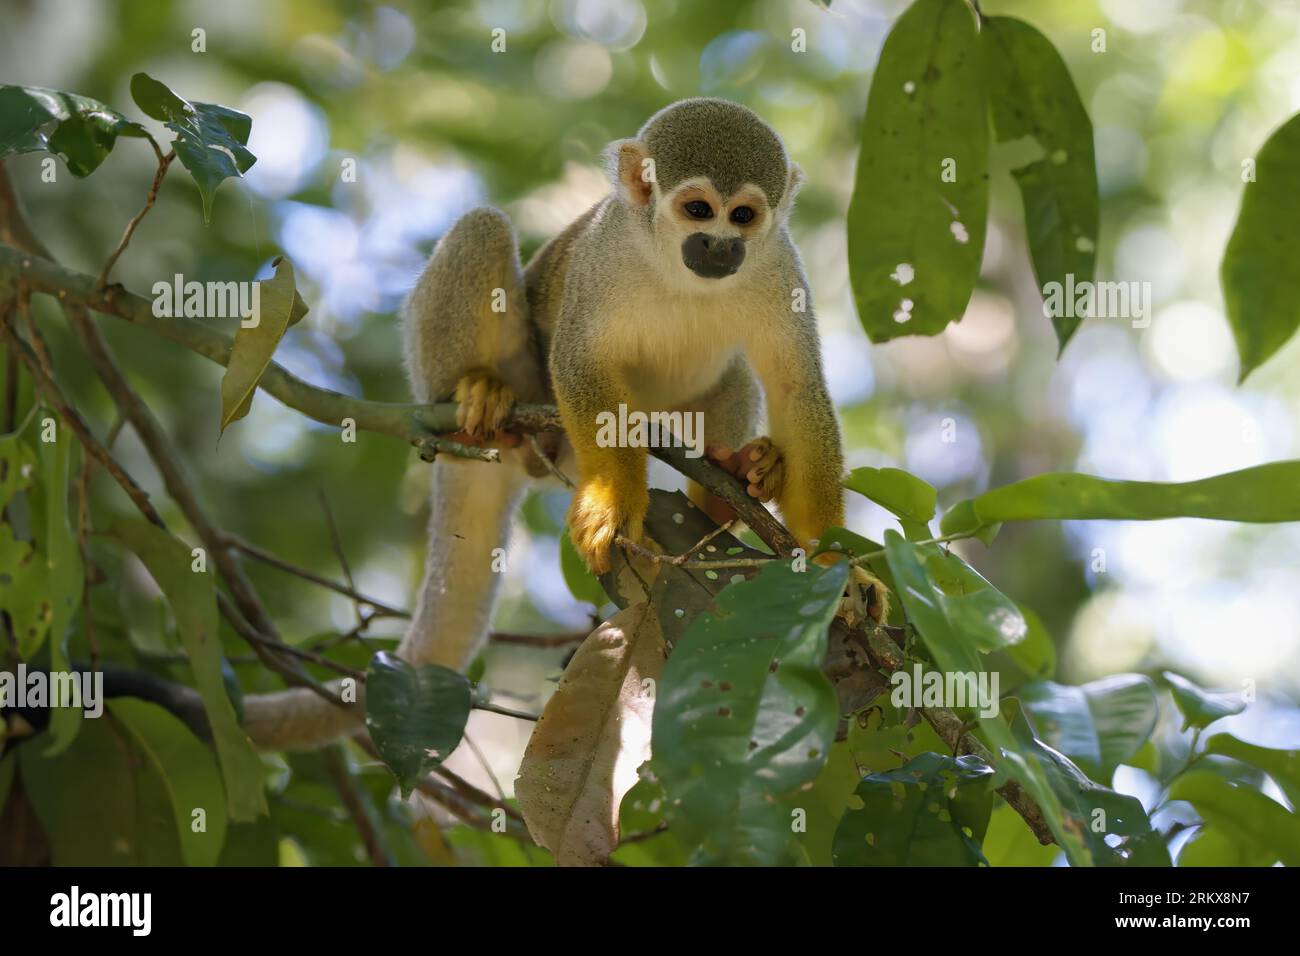 Singe écureuil guyanais mâle ou singe écureuil commun (Saimiri sciureus) dans un arbre, Amazonie, Brésil Banque D'Images